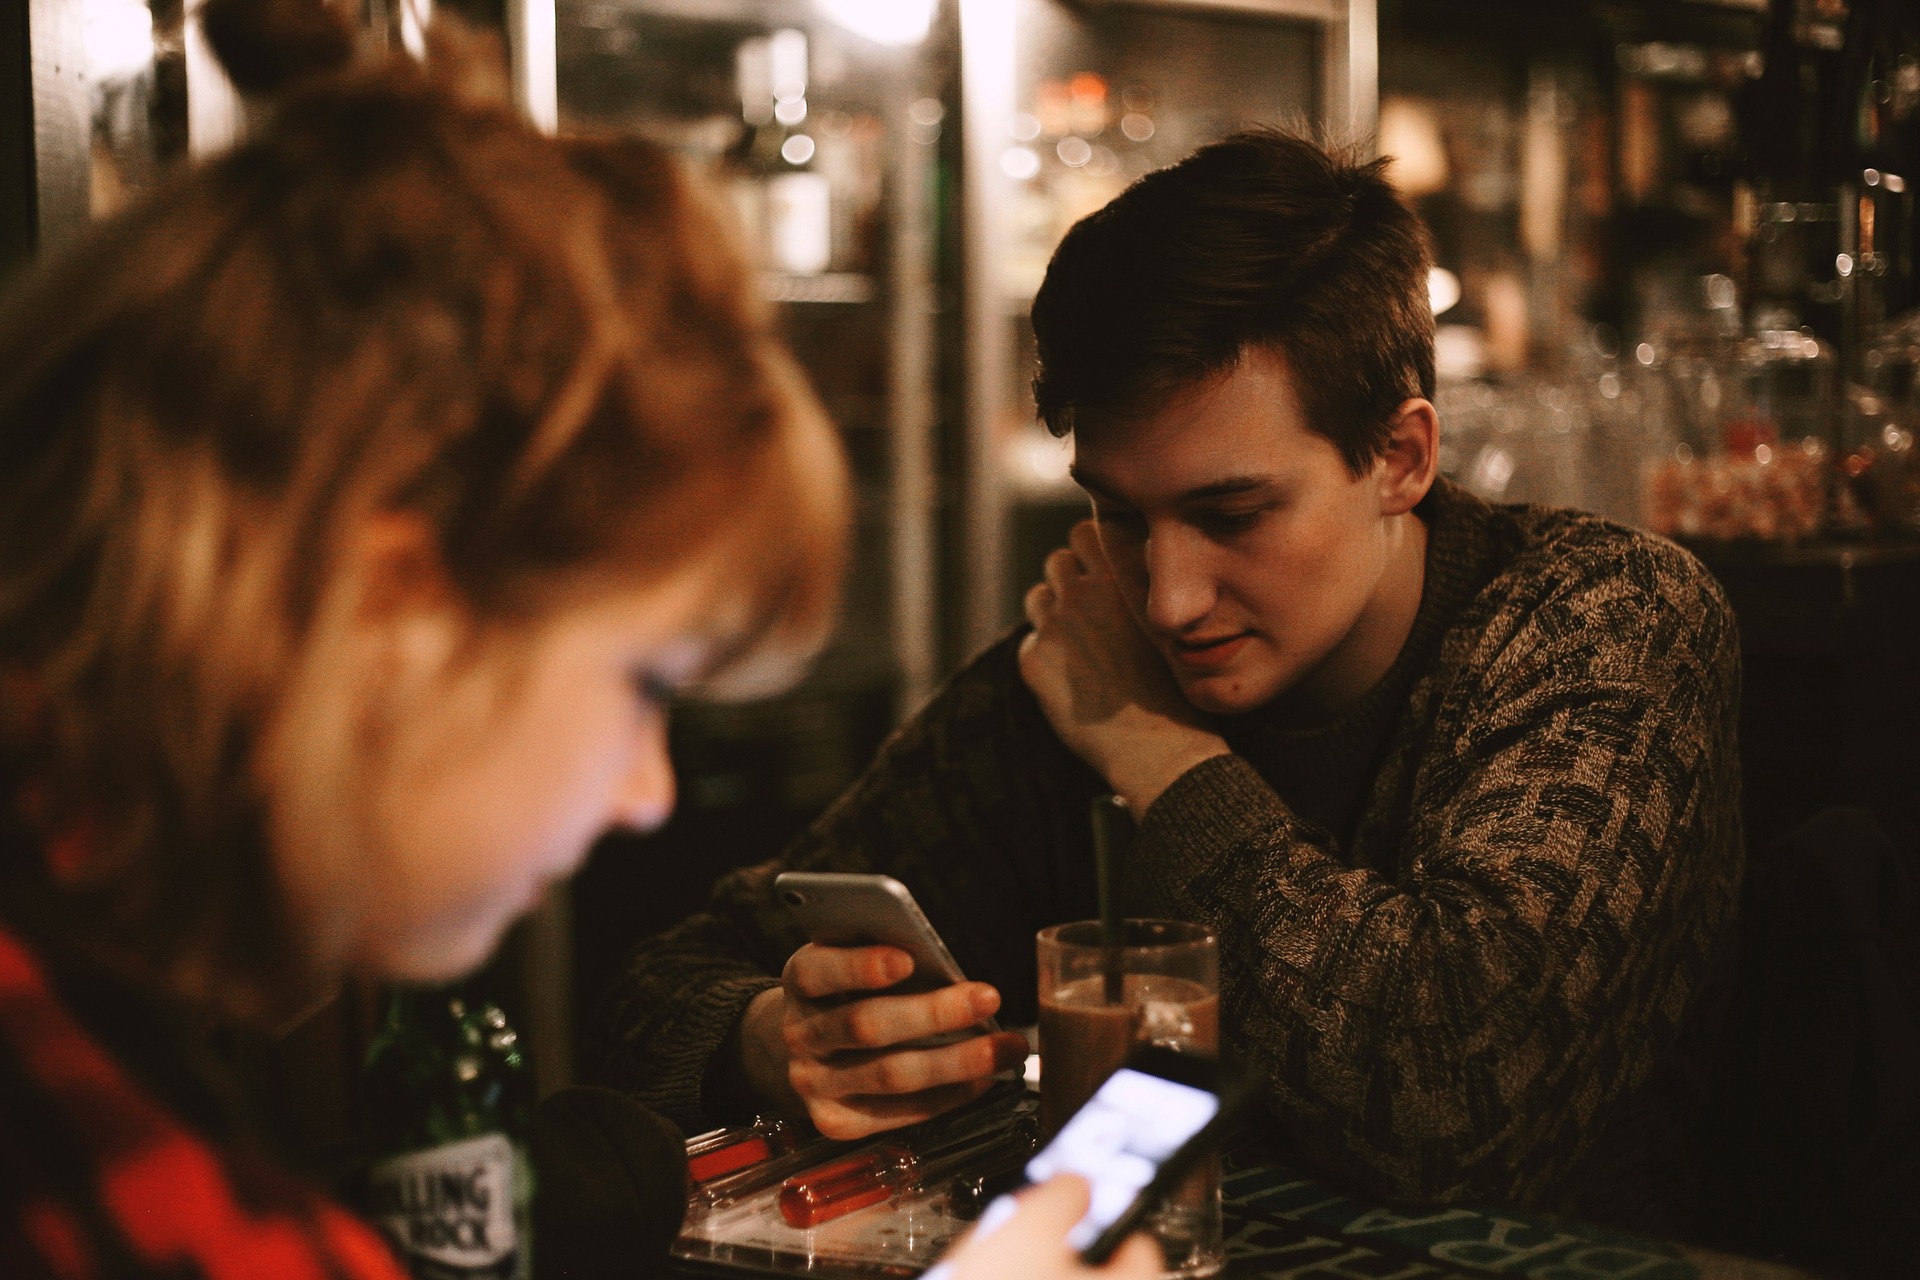 teens texting at table